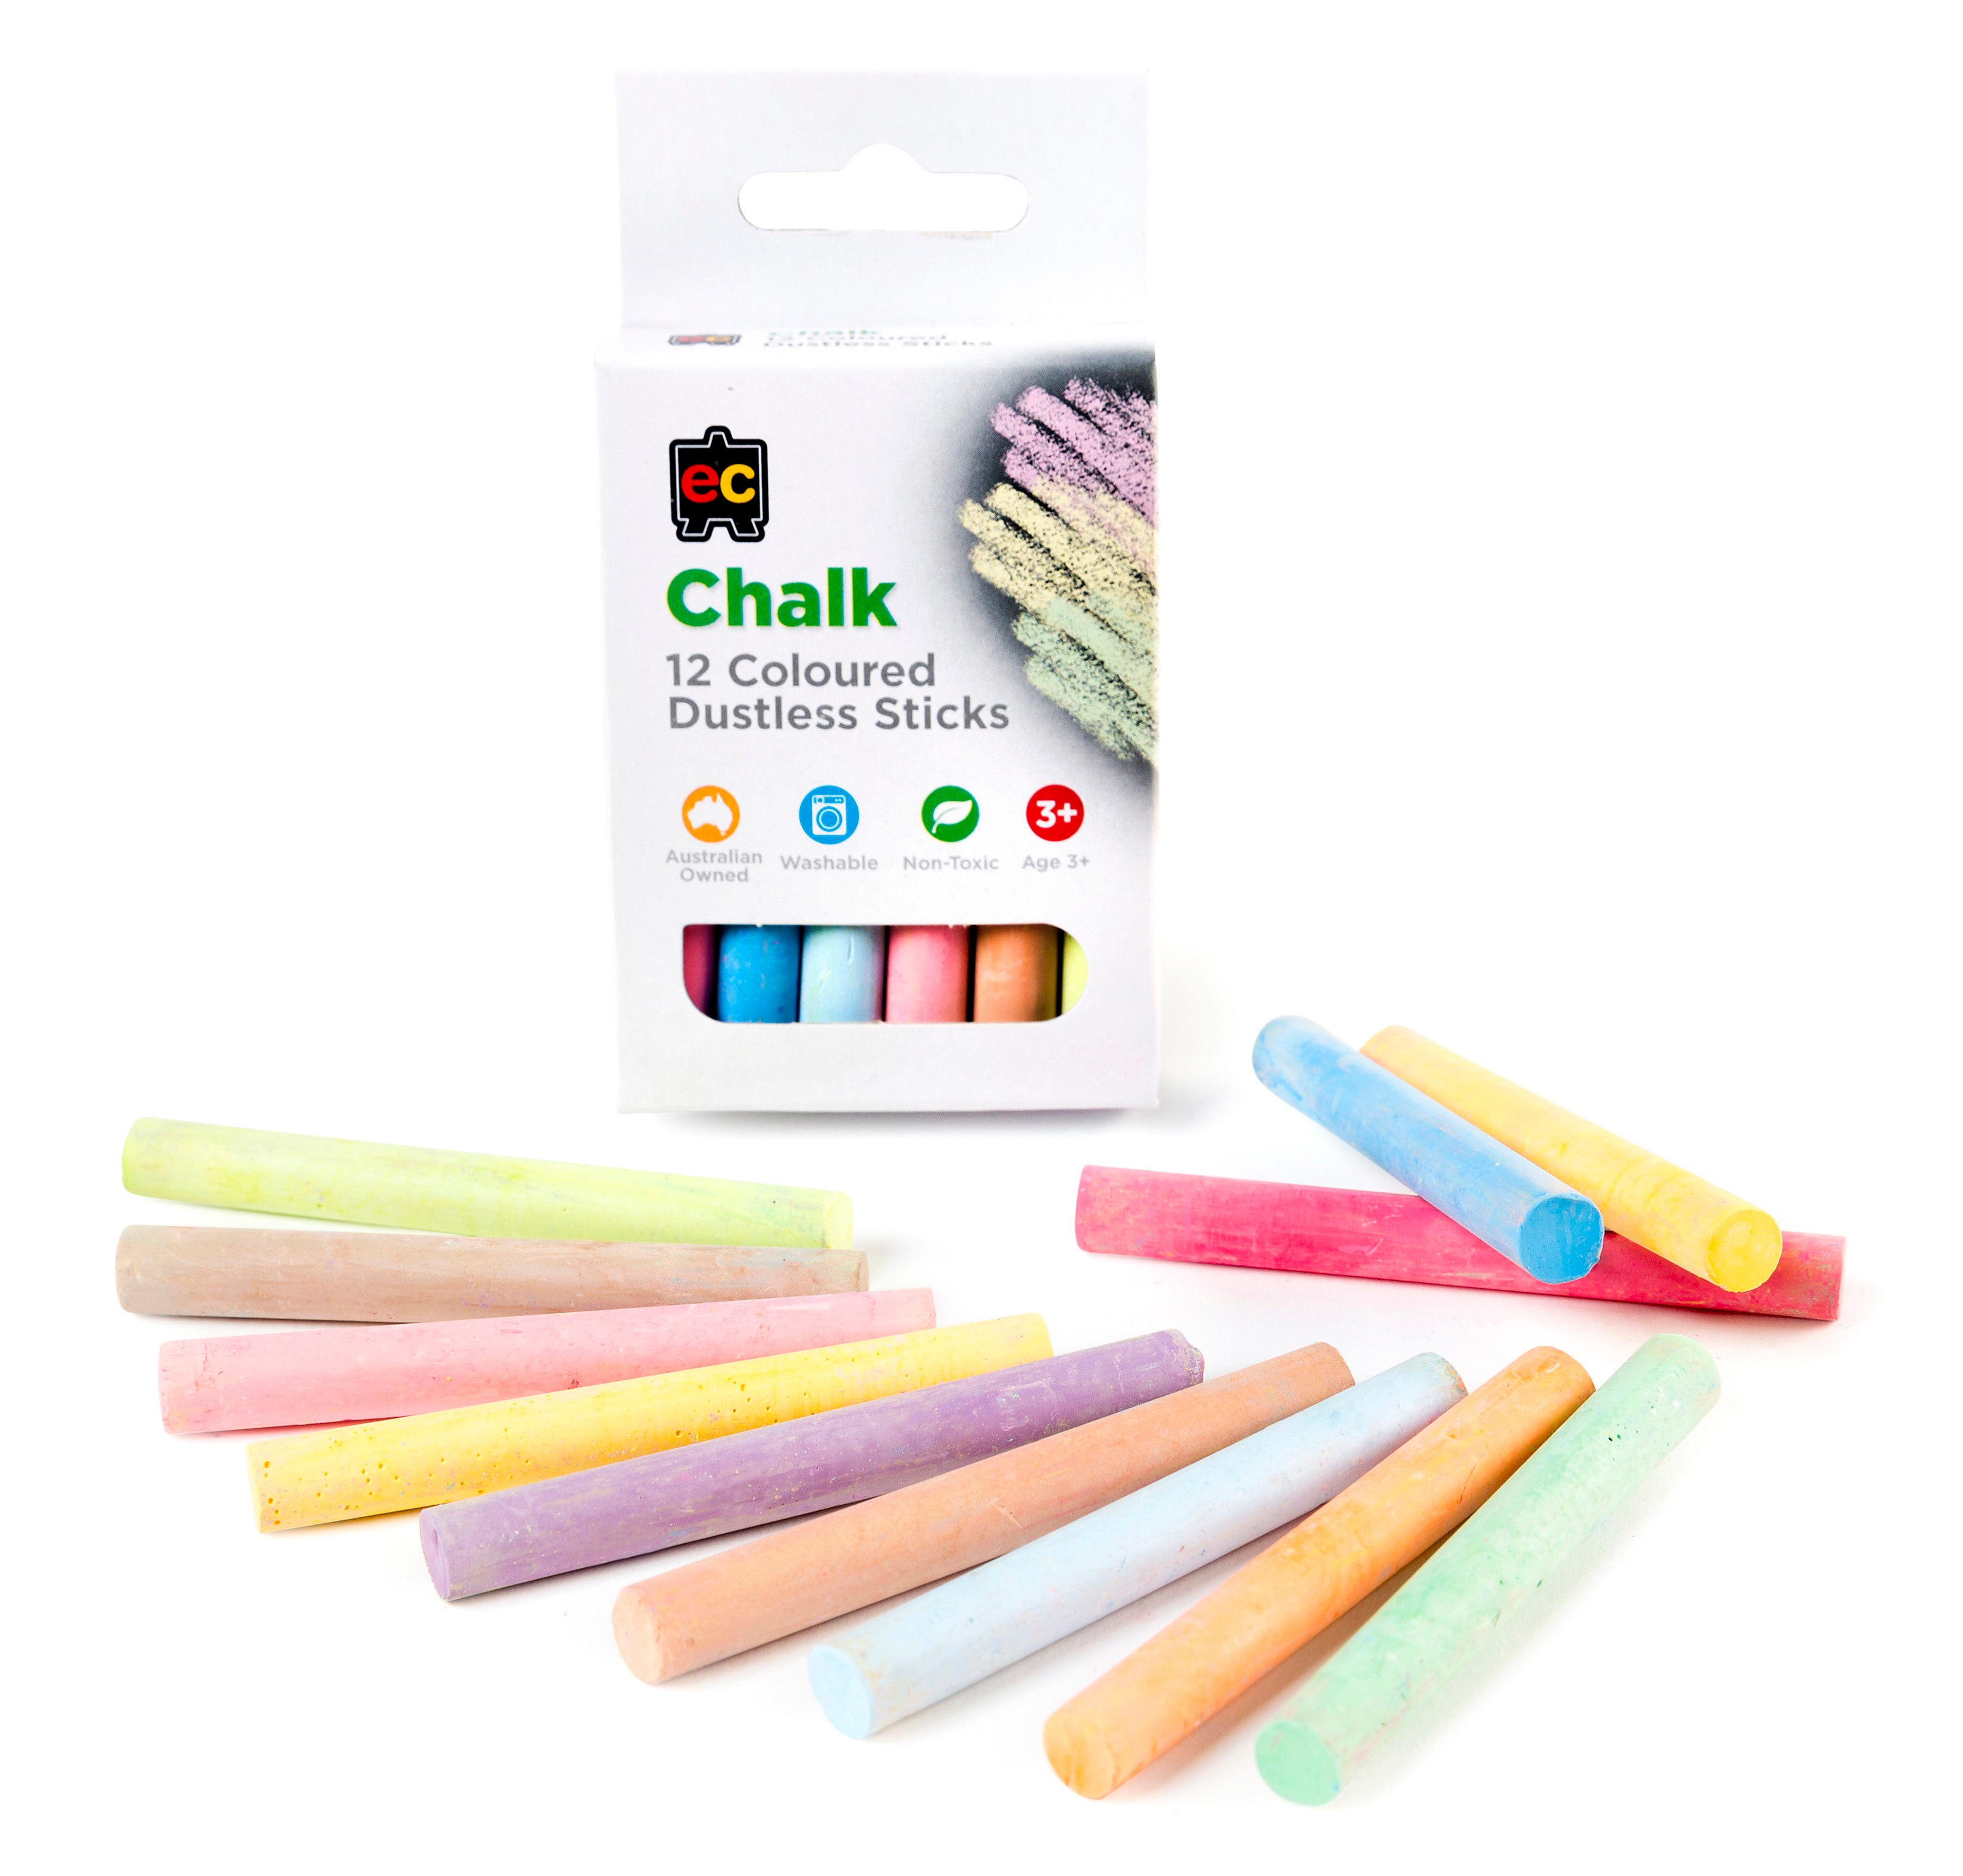 Dustless chalk for kids